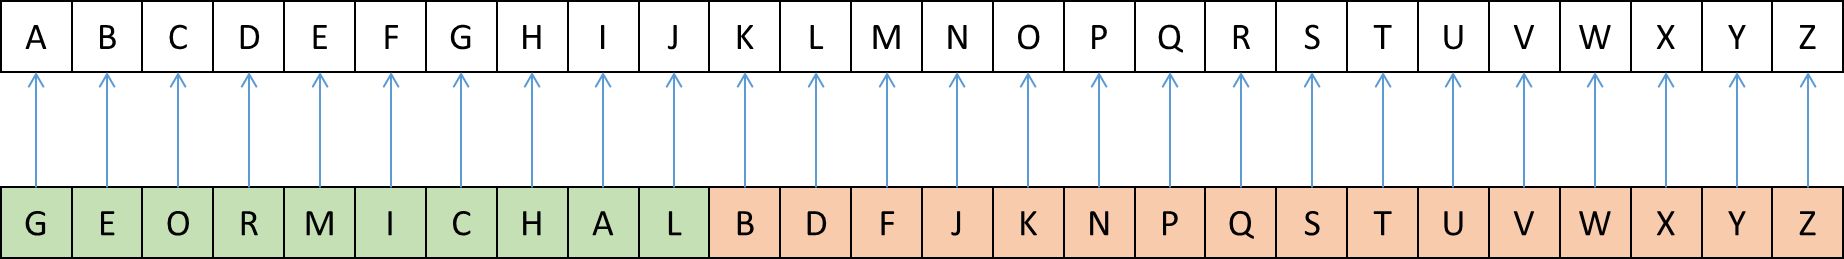 alfabet decoderen